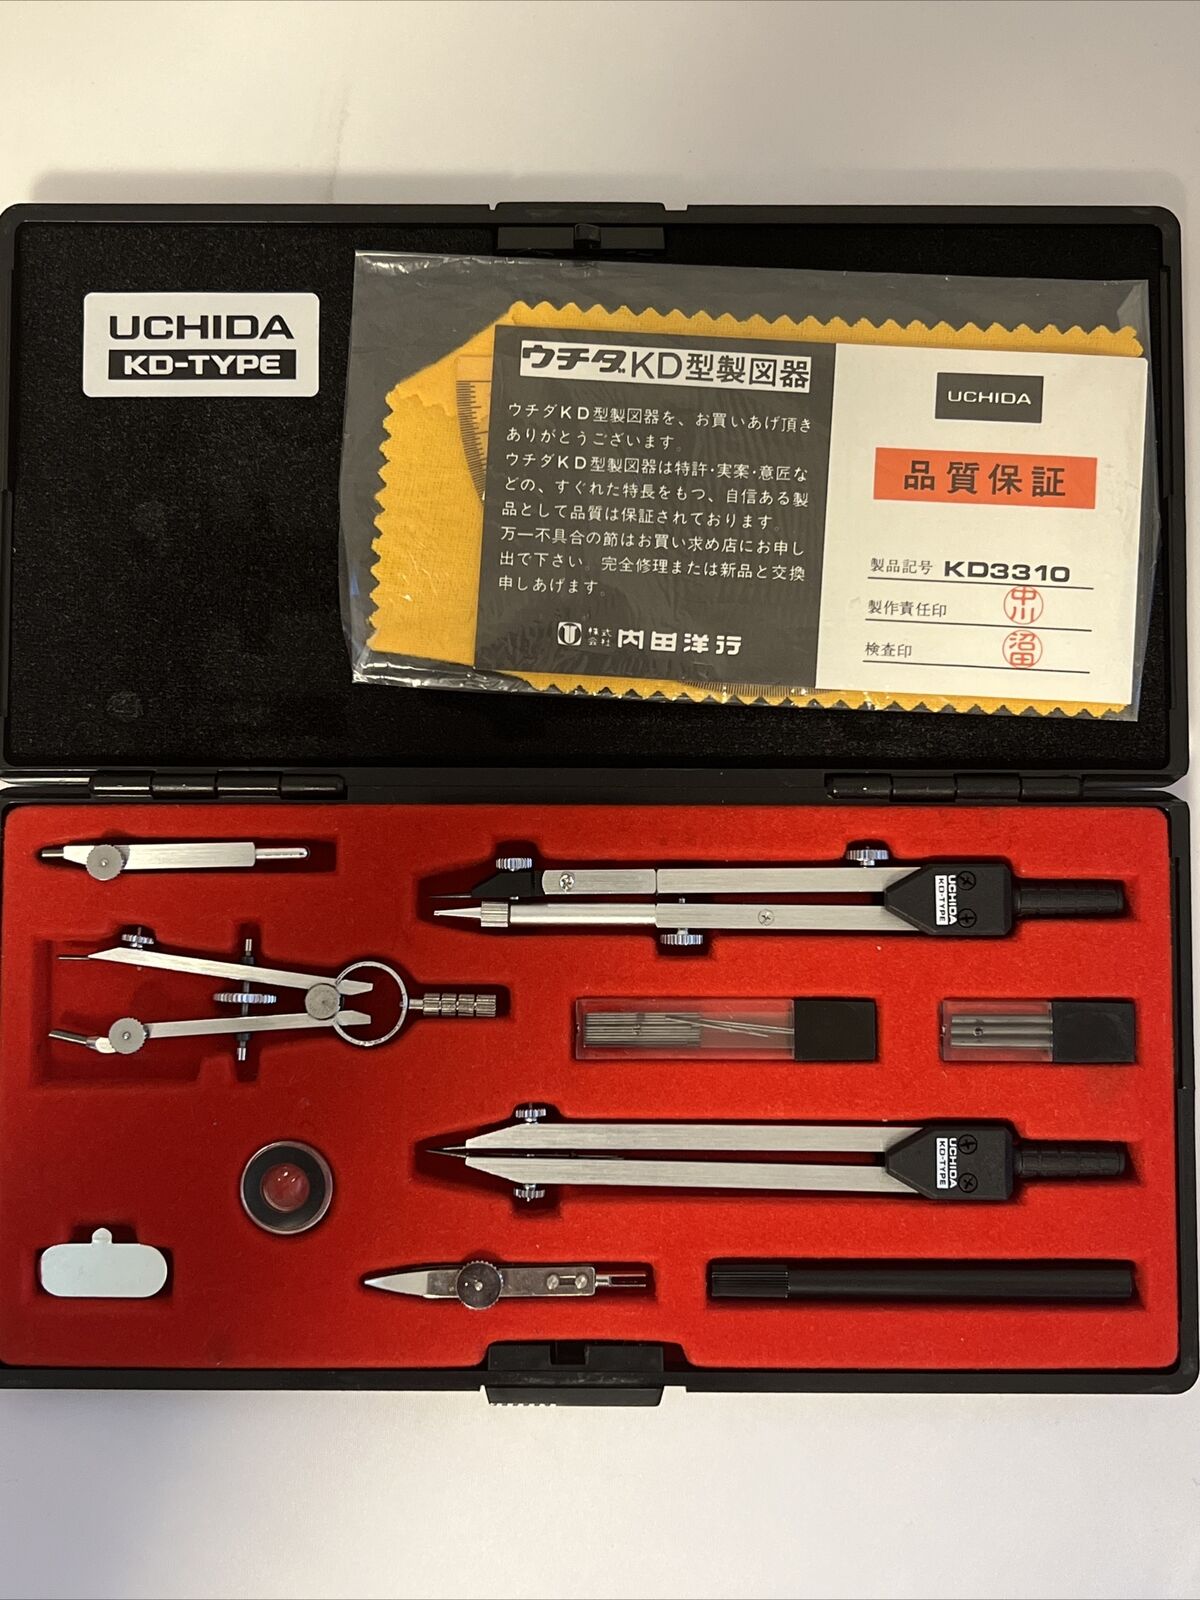 Vintage UCHIDA KD-SE type Drafting Tools - Rare Find